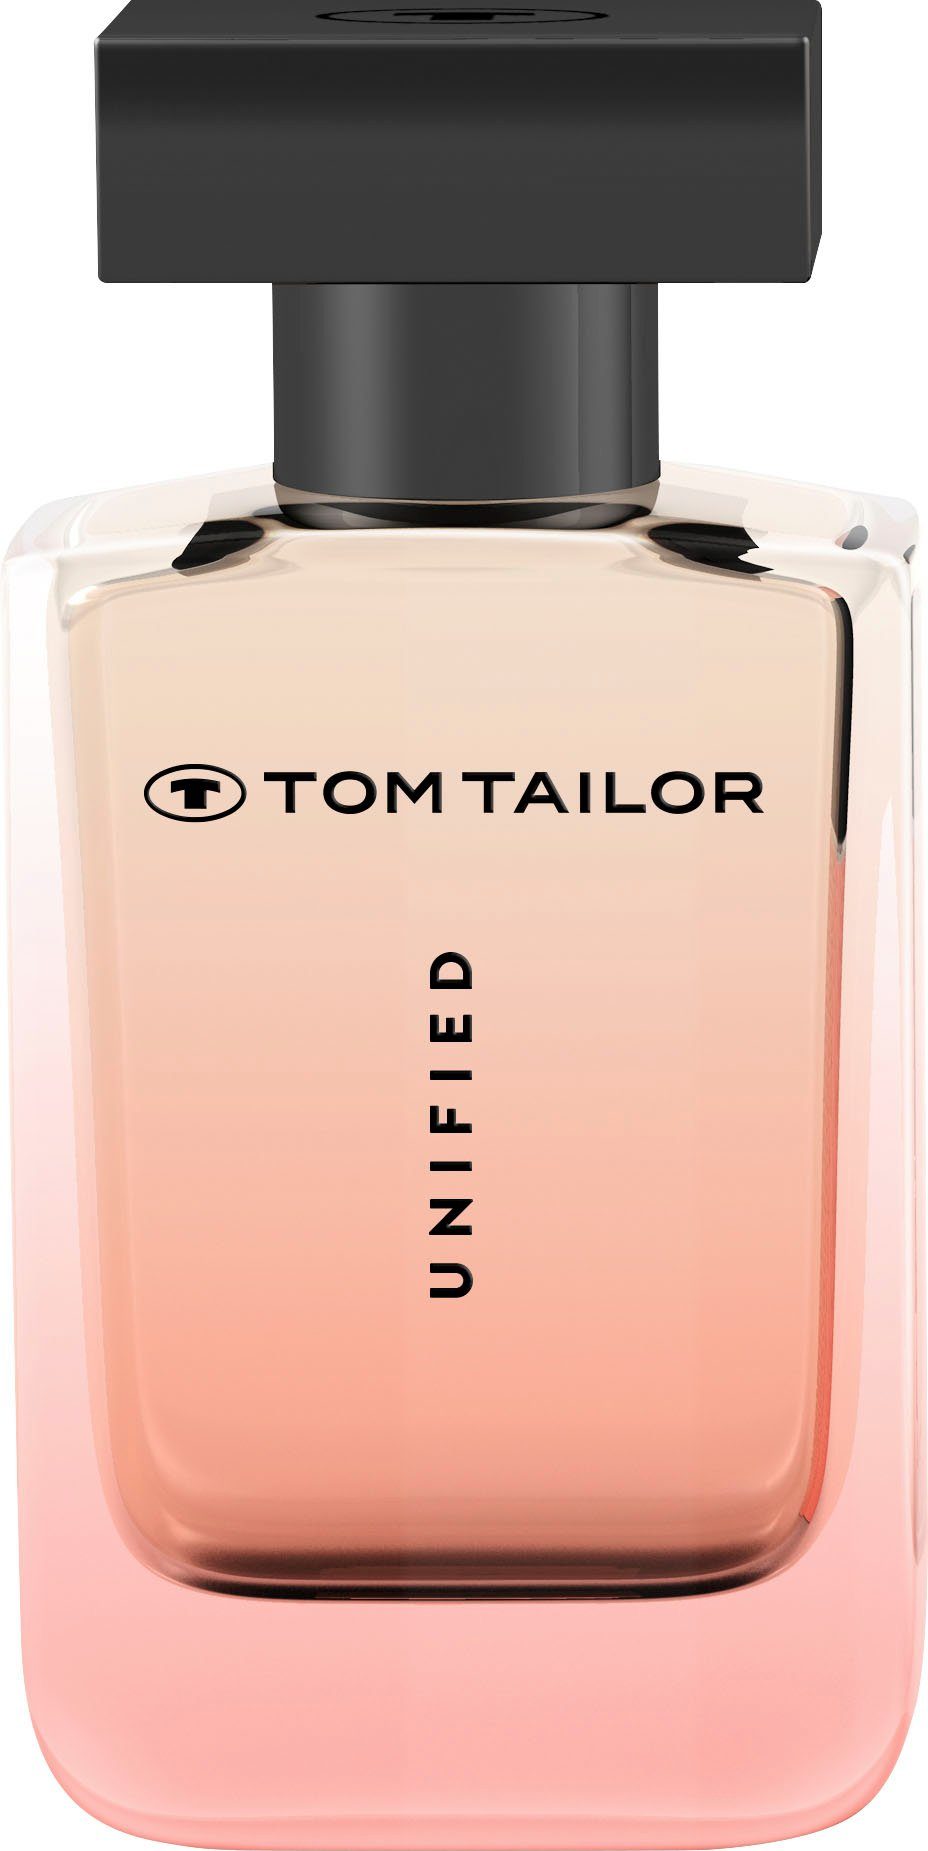 UNIFIED Eau Parfum TAILOR TOM Woman de